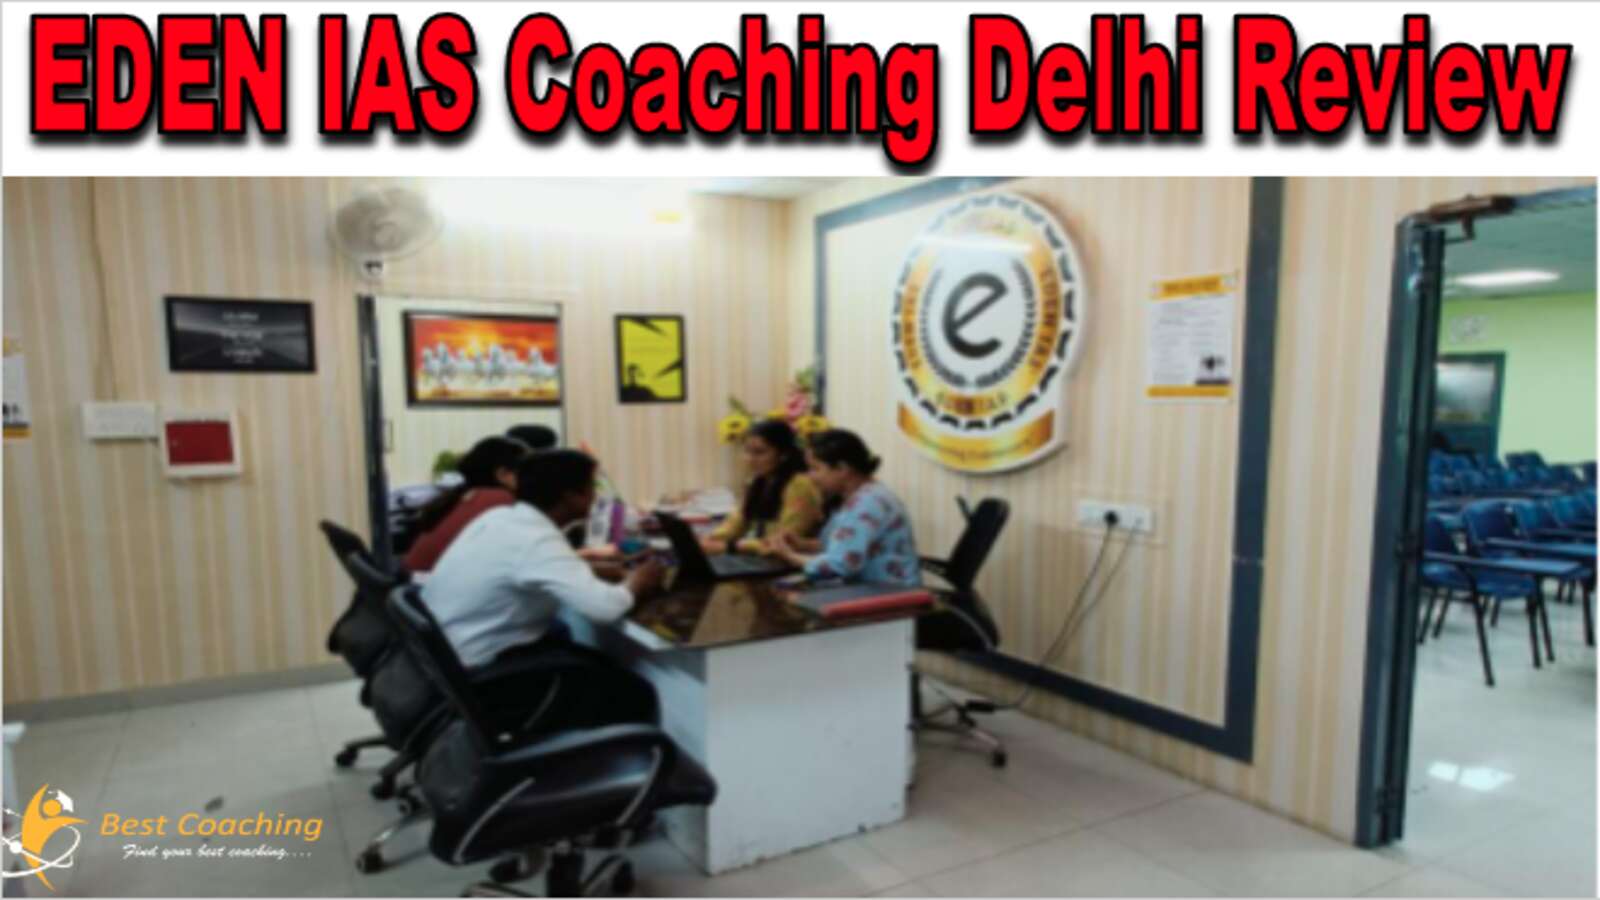 EDEN IAS Delhi Review